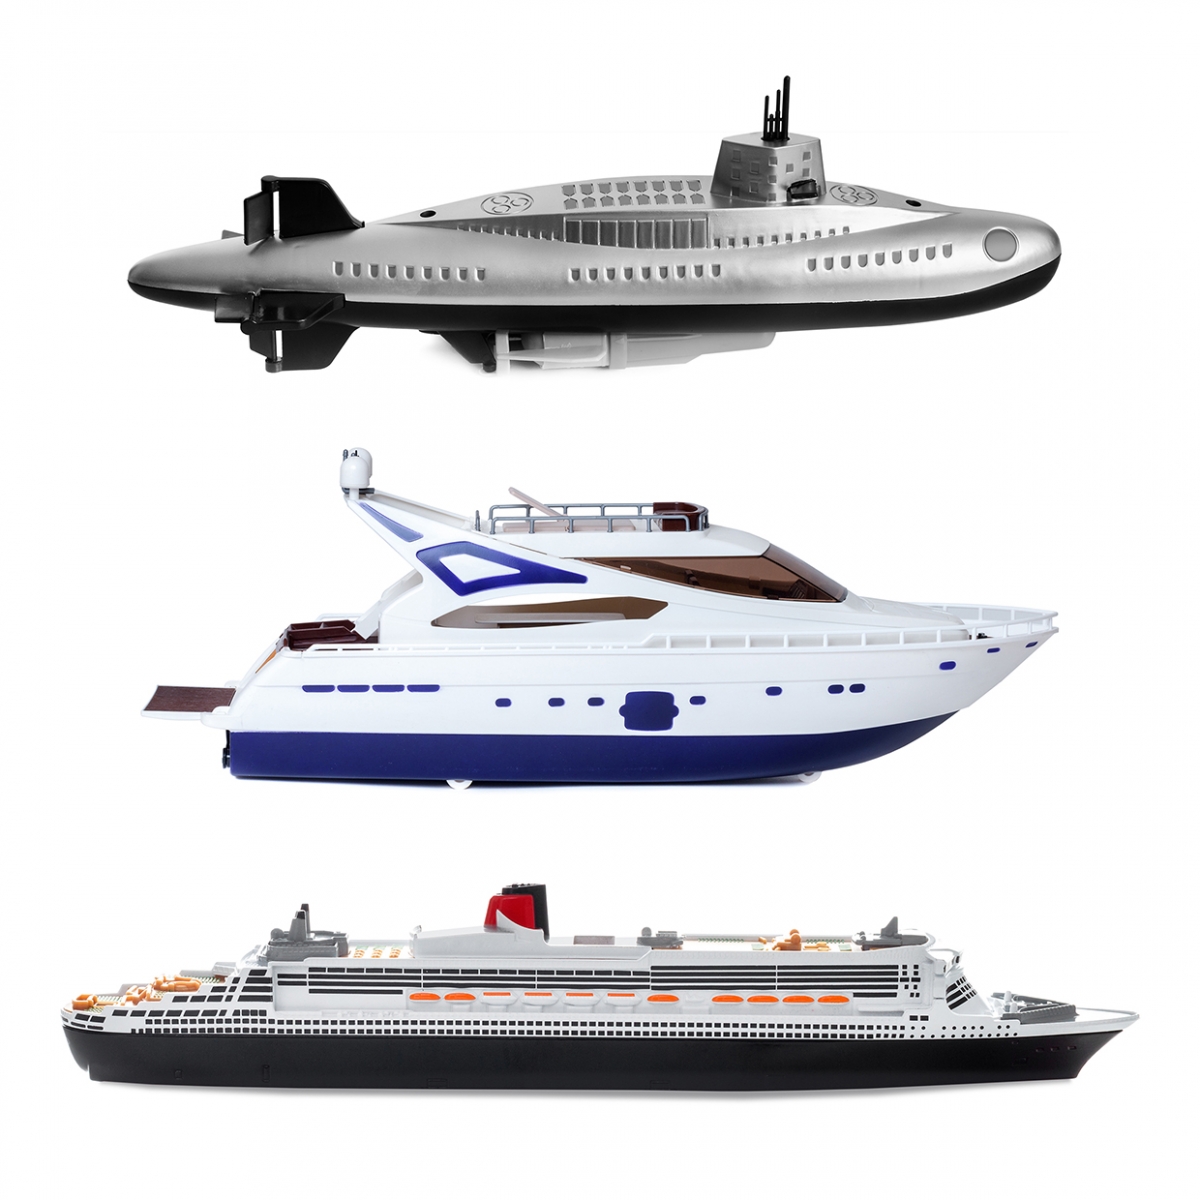 Imagen en la que se ven tres medios de transporte acuáticos: un submarino, un yate y un barco